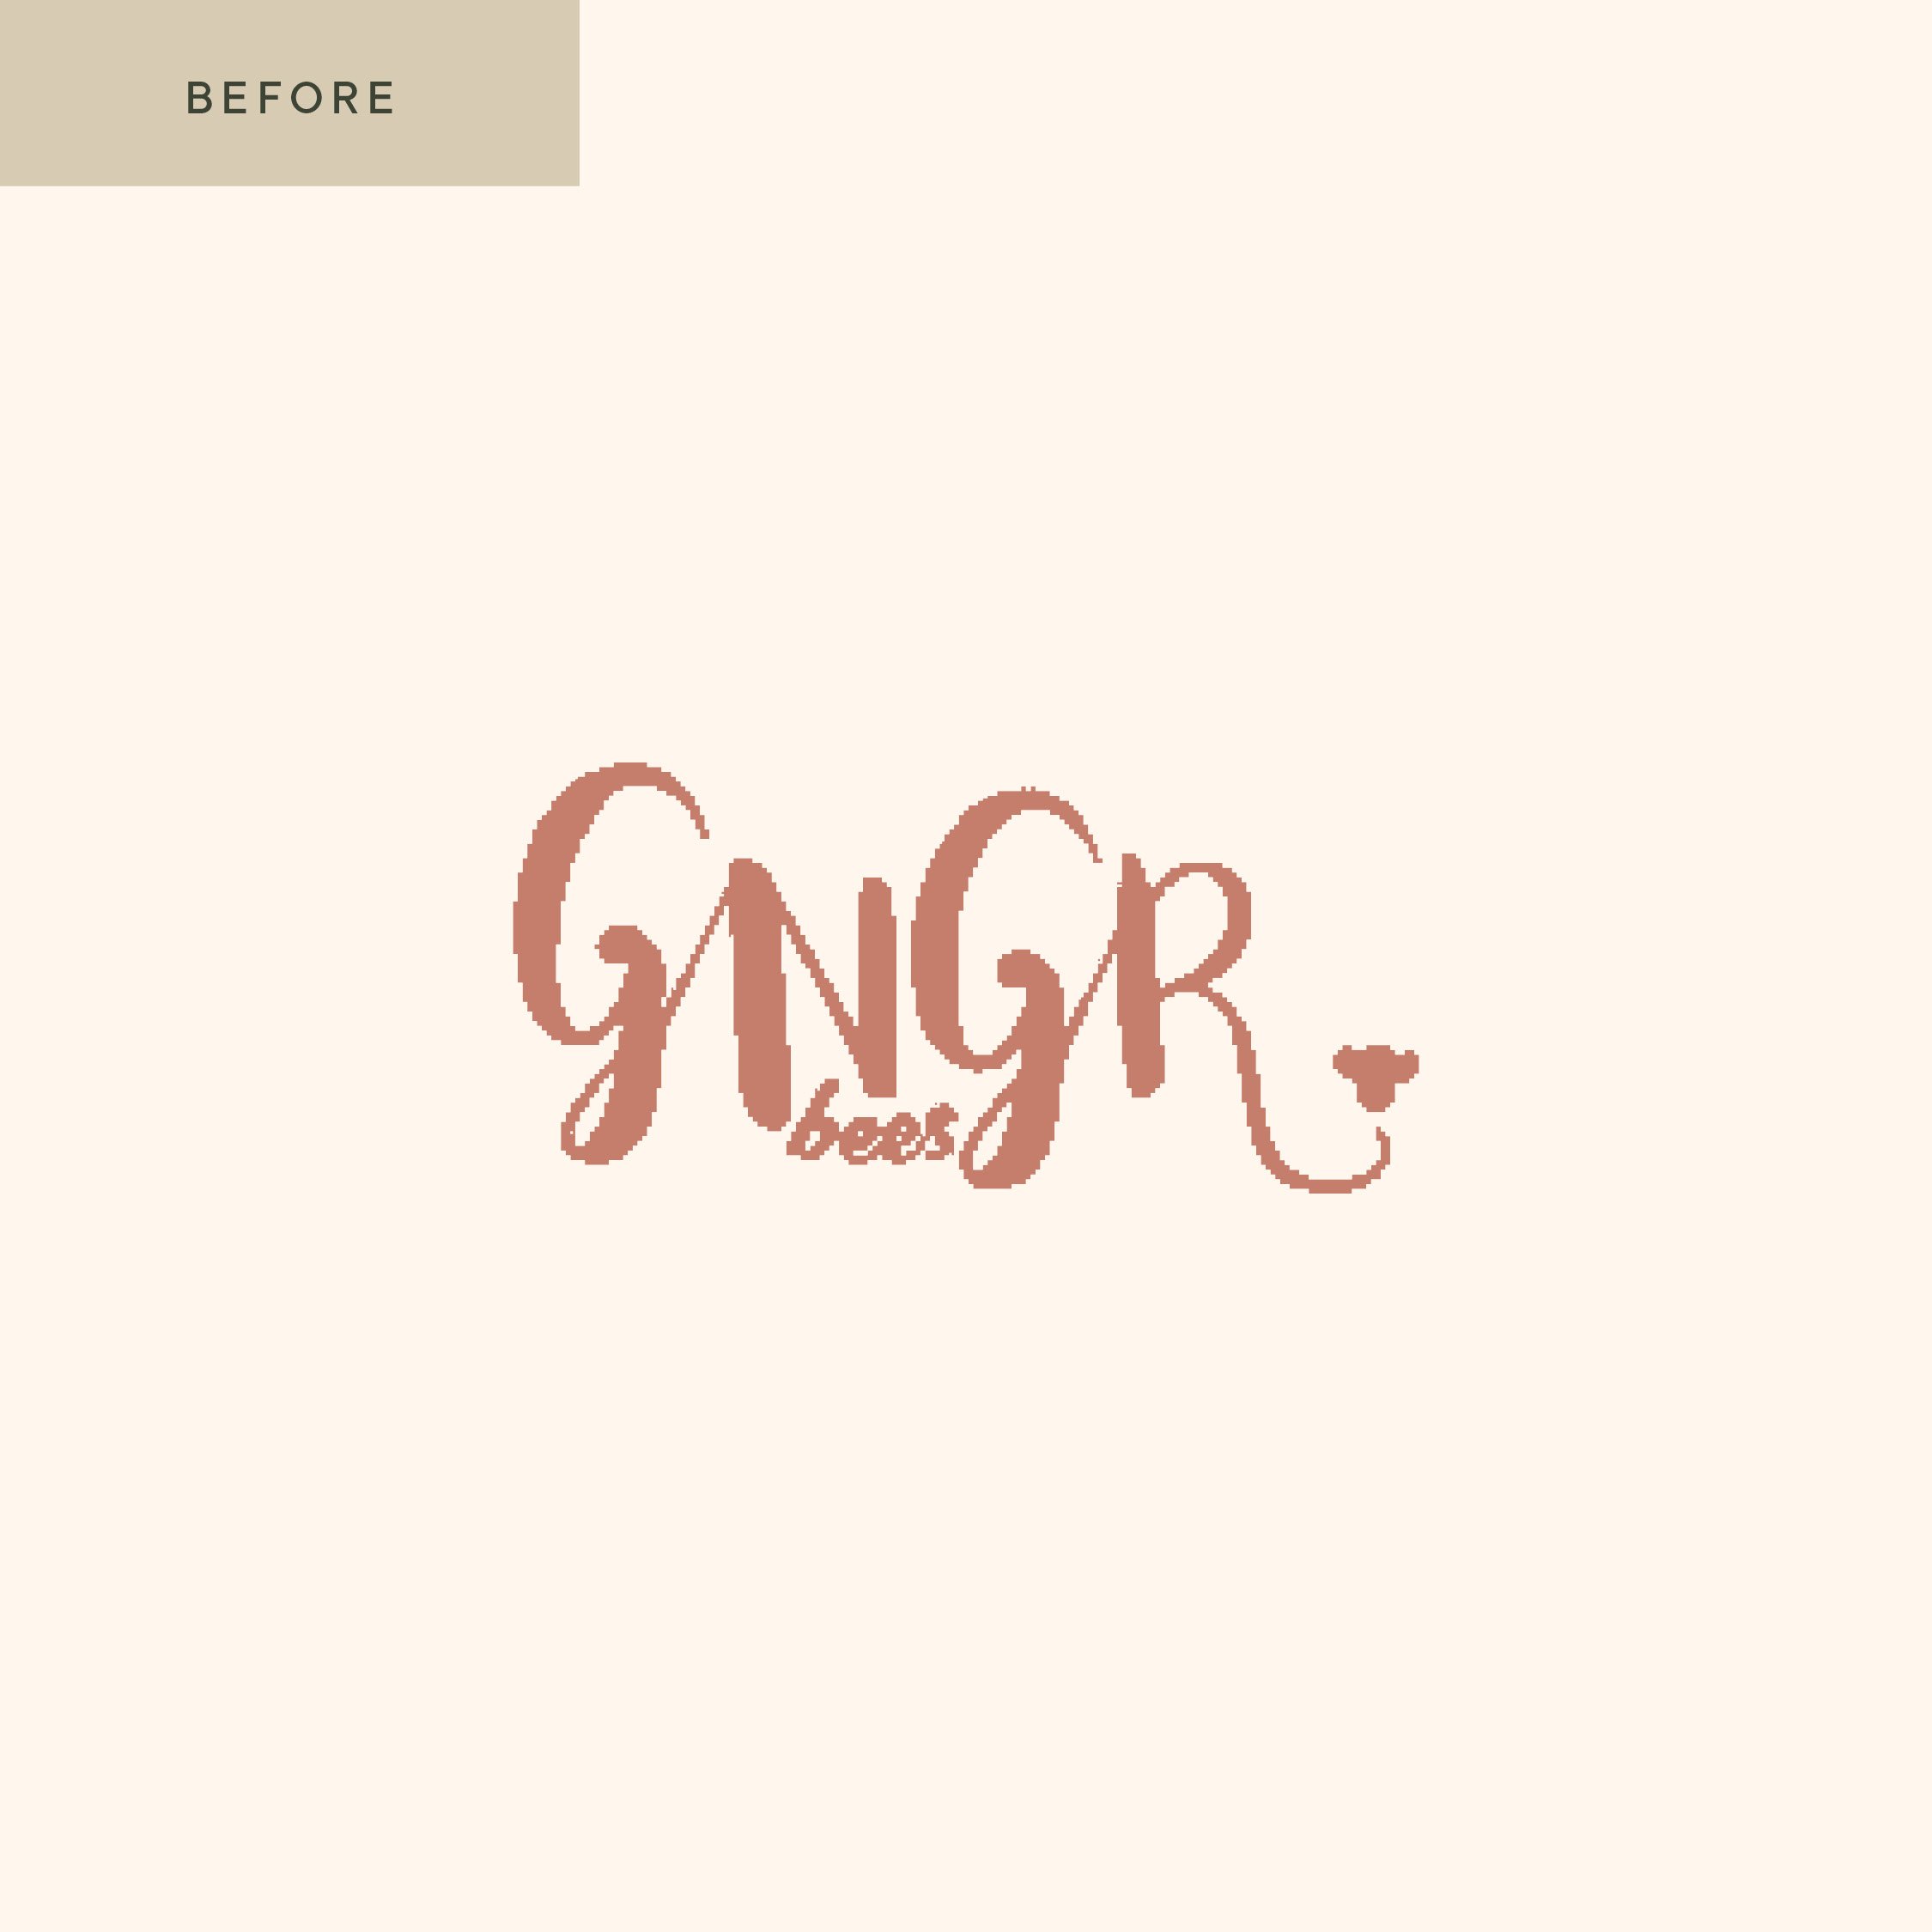 GNGRBees_New-Before2.jpg